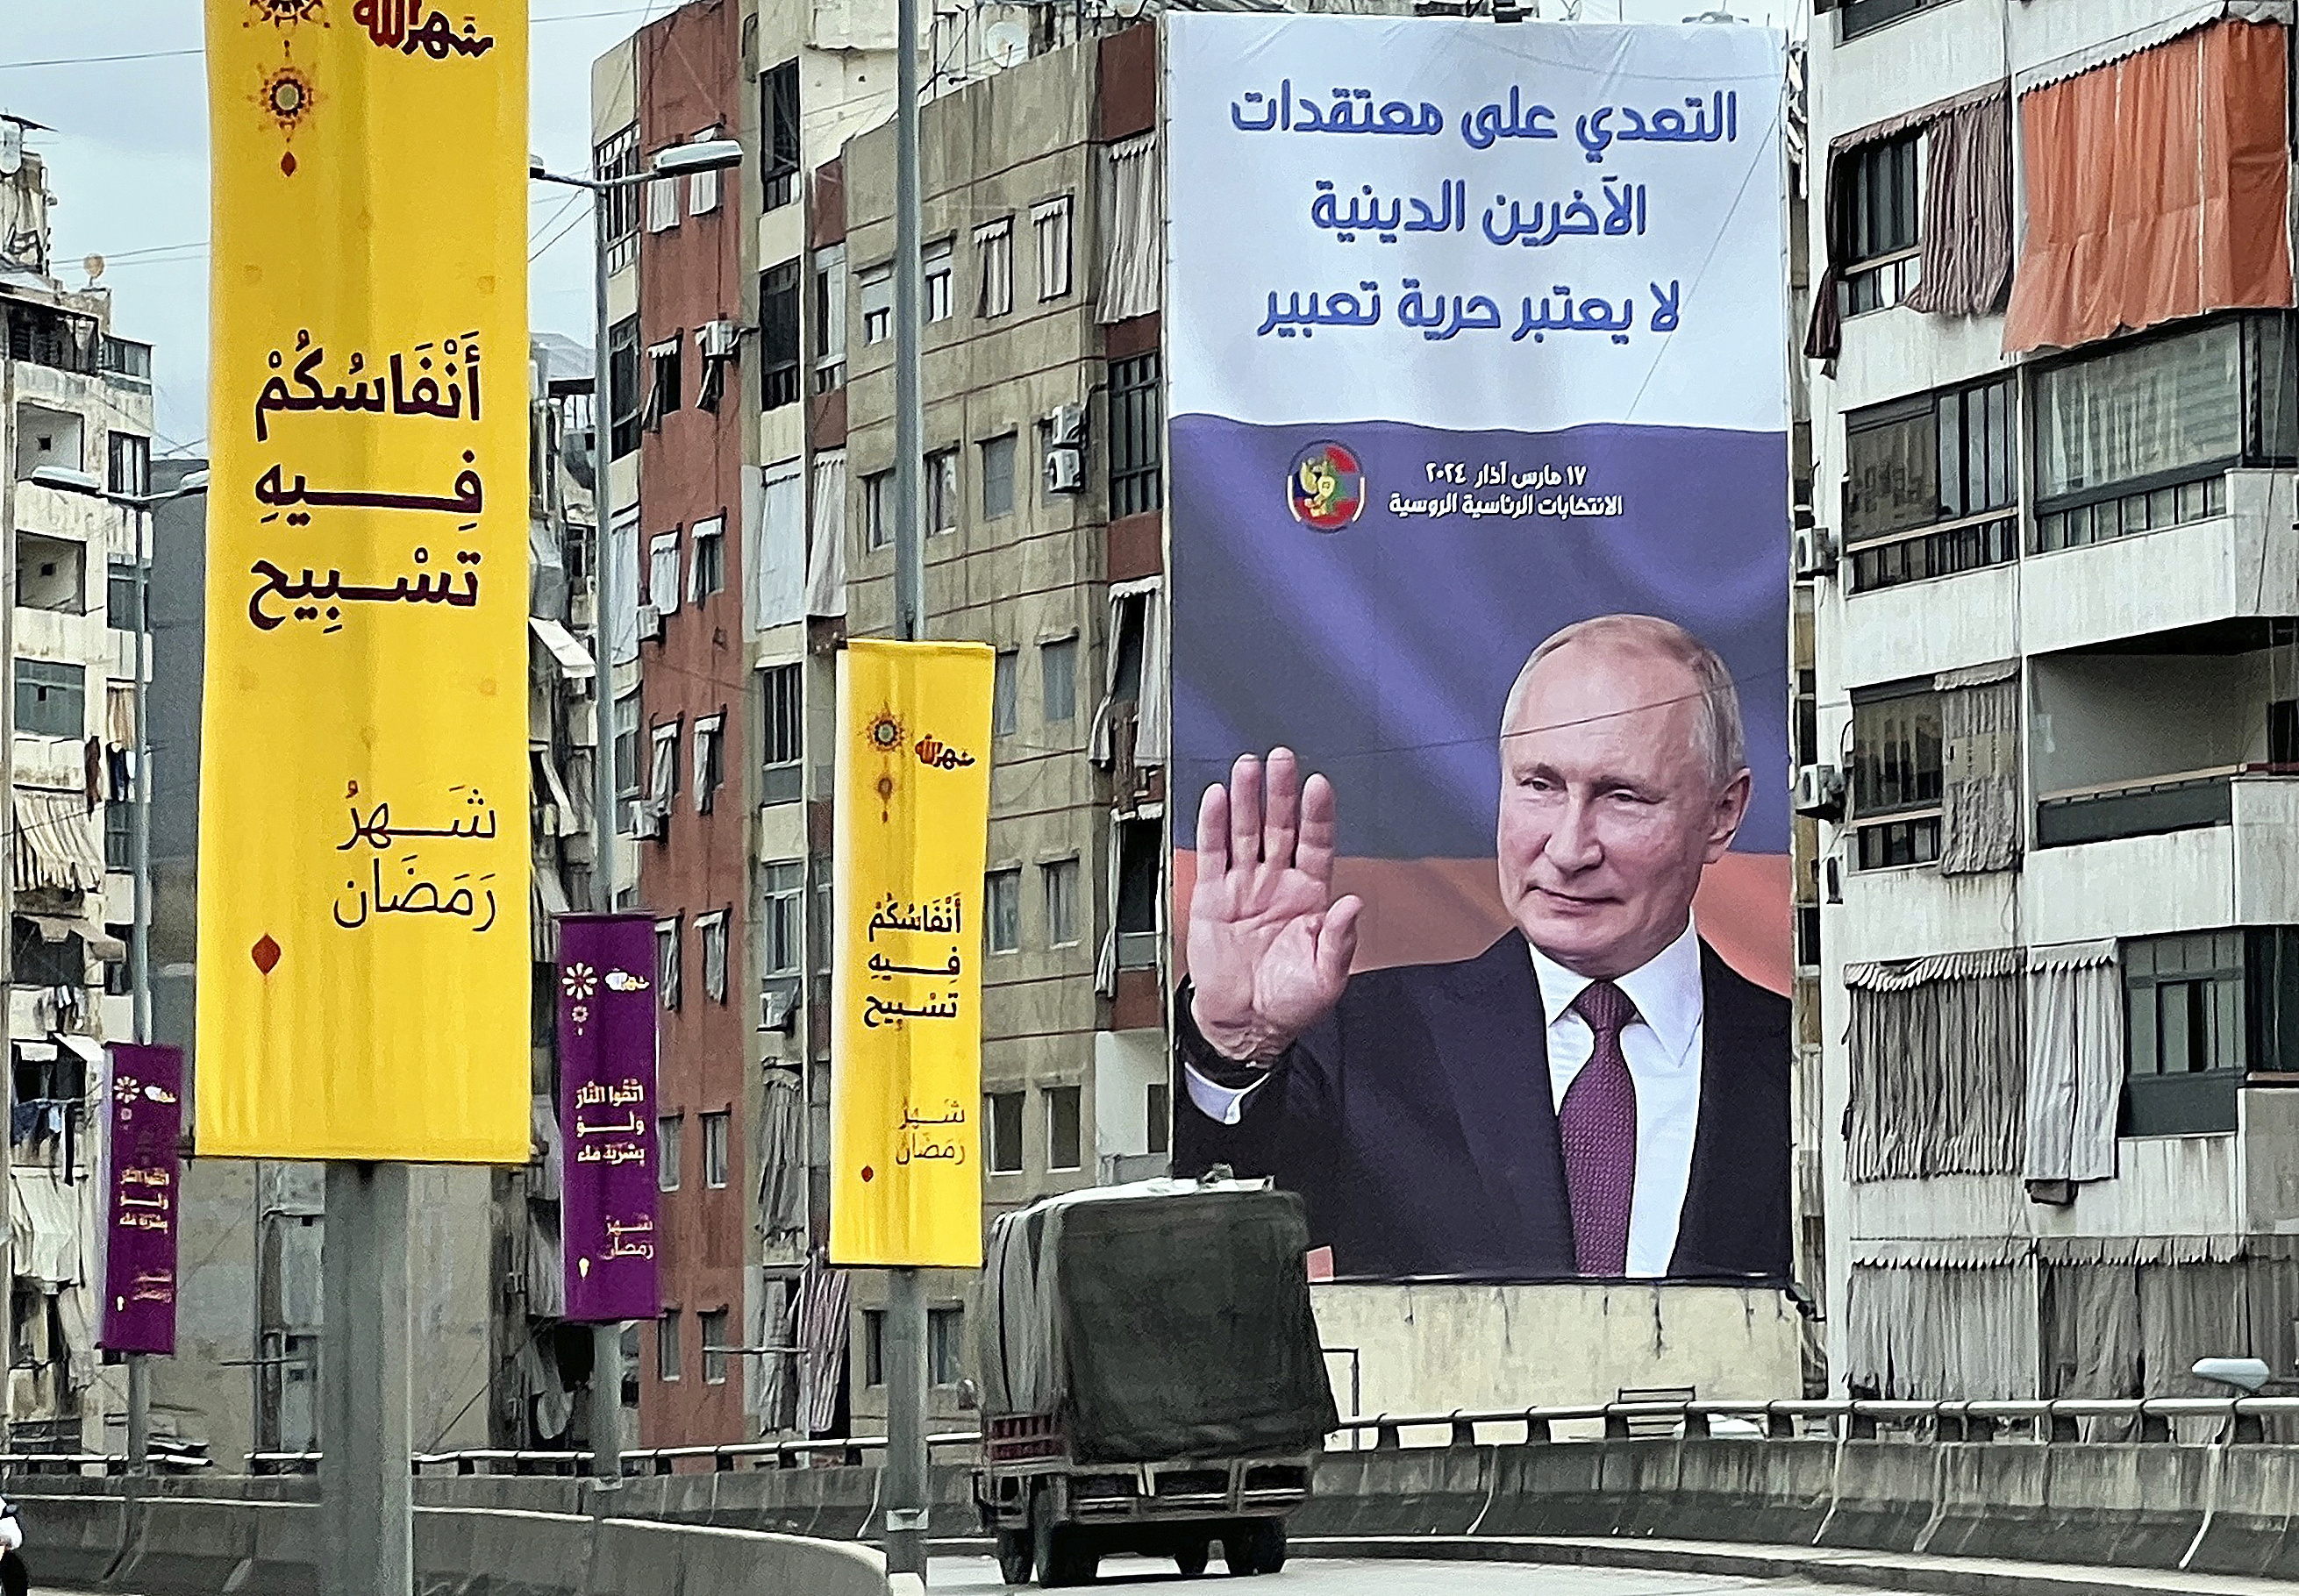 Cartel de Vladimir Putin en Beirut (Lbano).